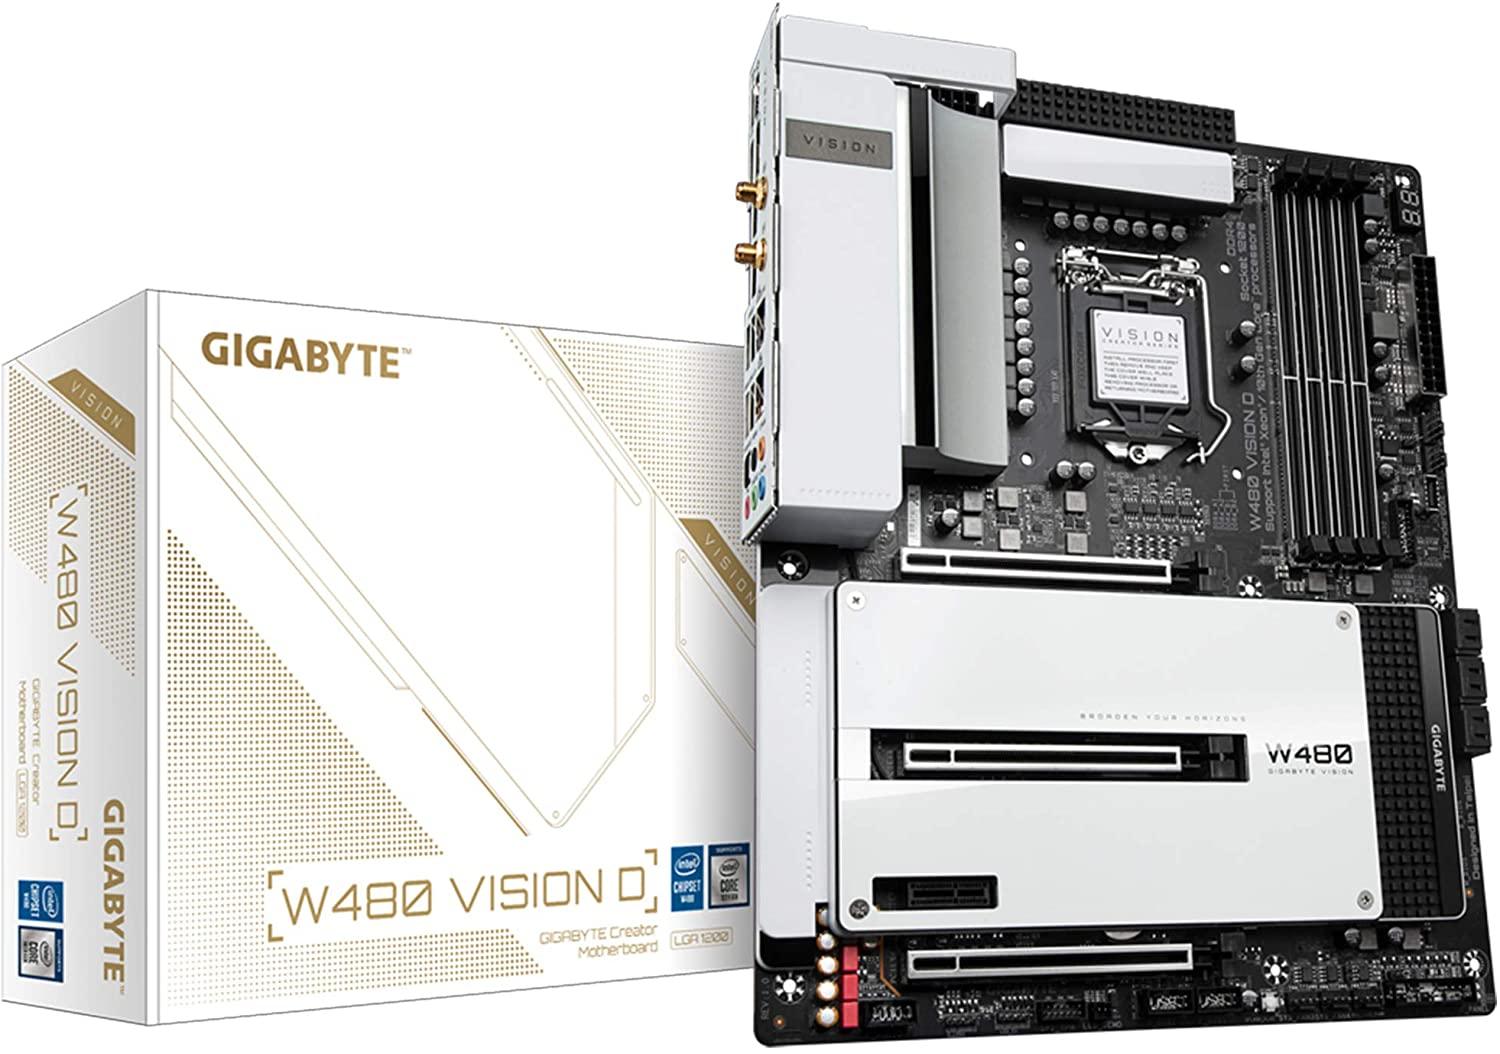 Gigabyte W480 Vision D Motherboard-Mother Boards-dealsplant